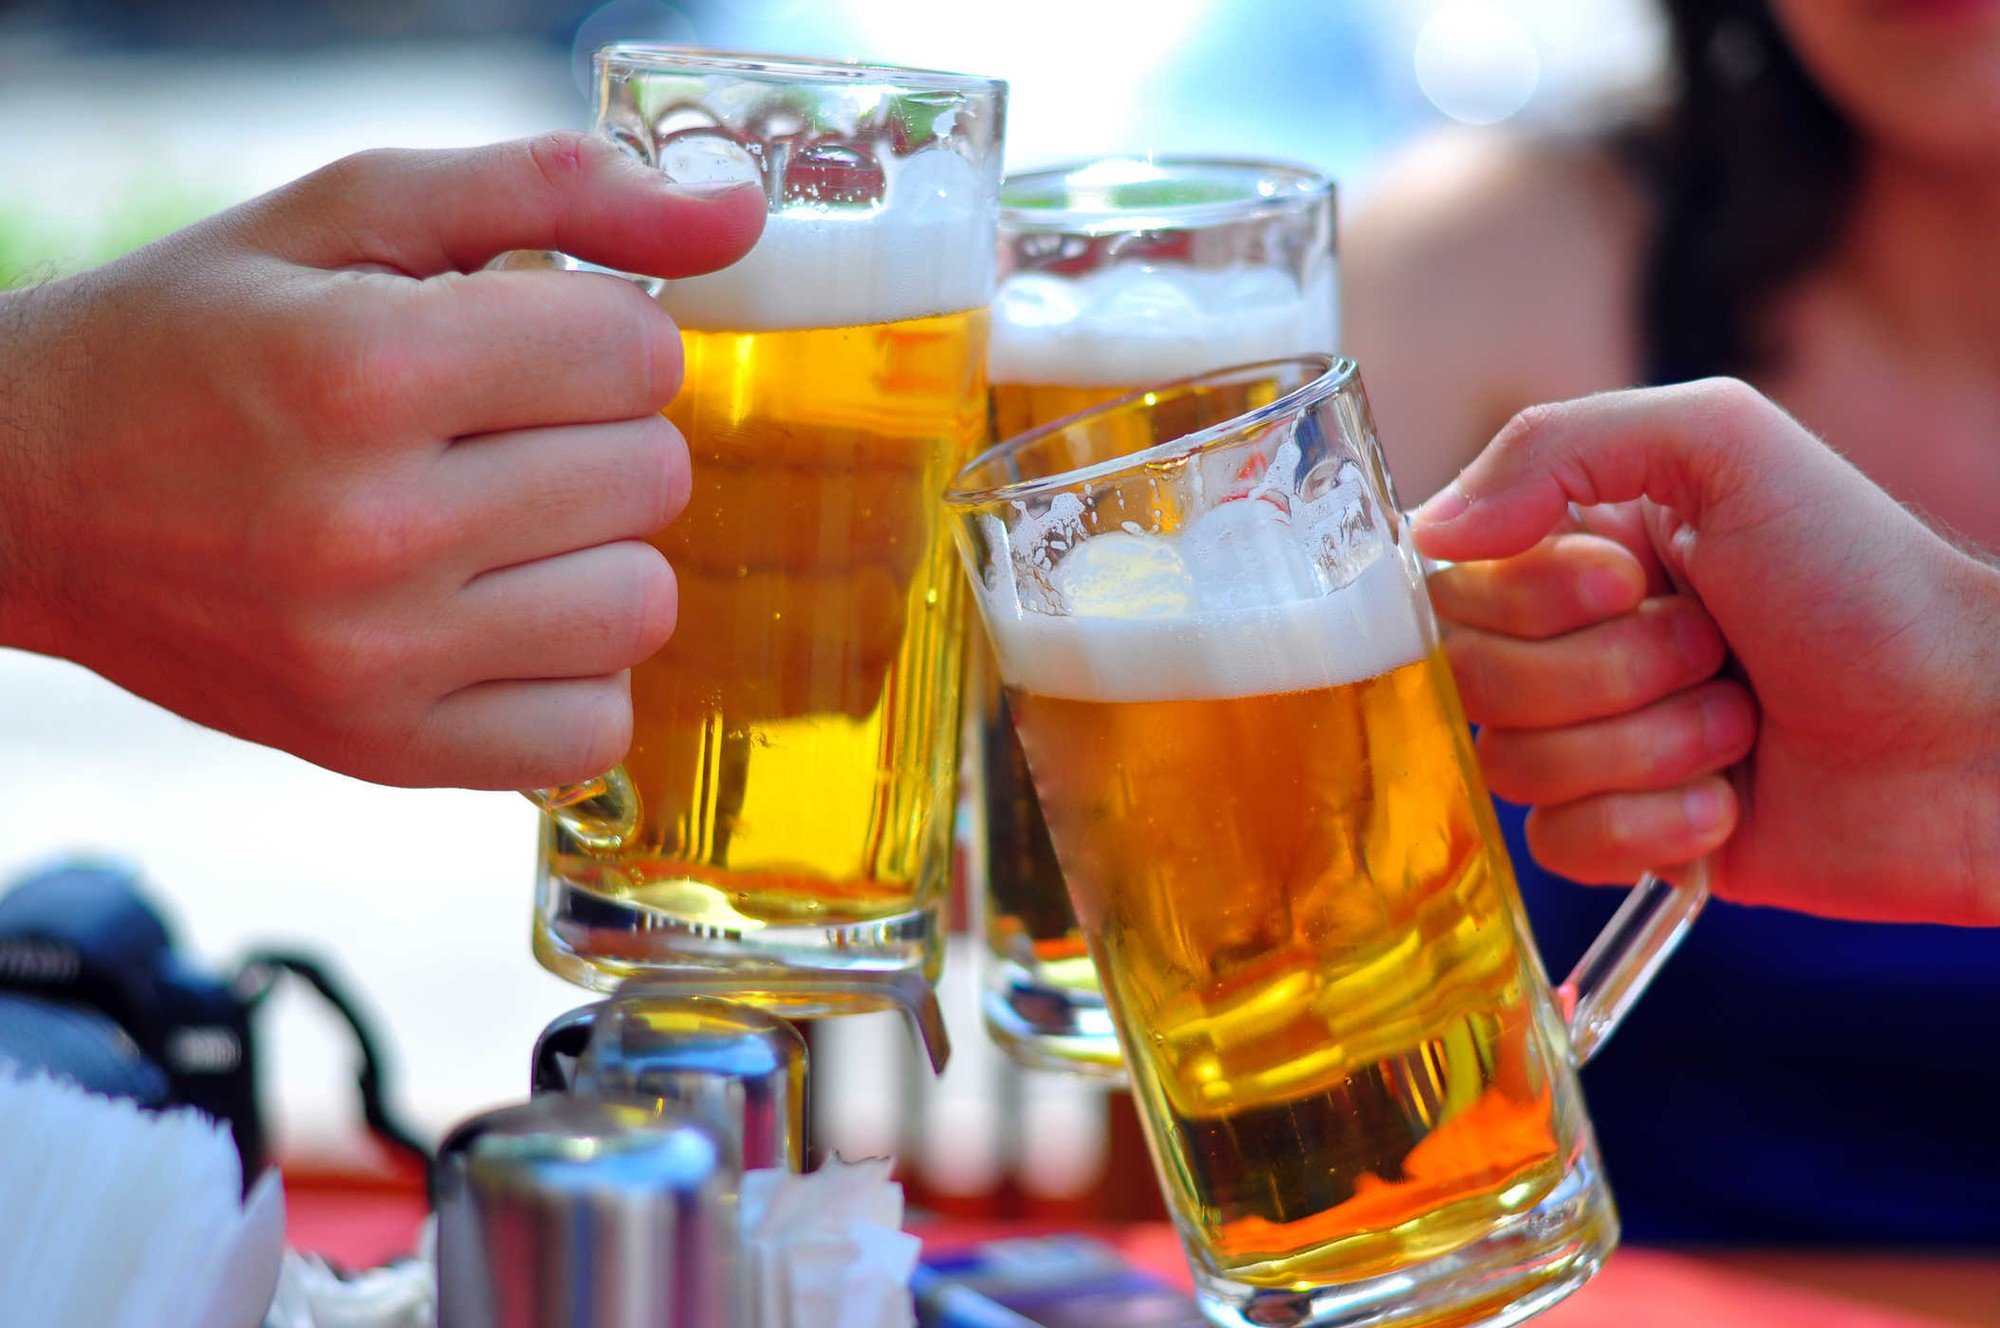   Hệ miễn dịch suy yếu do uống quá nhiều rượu bia  